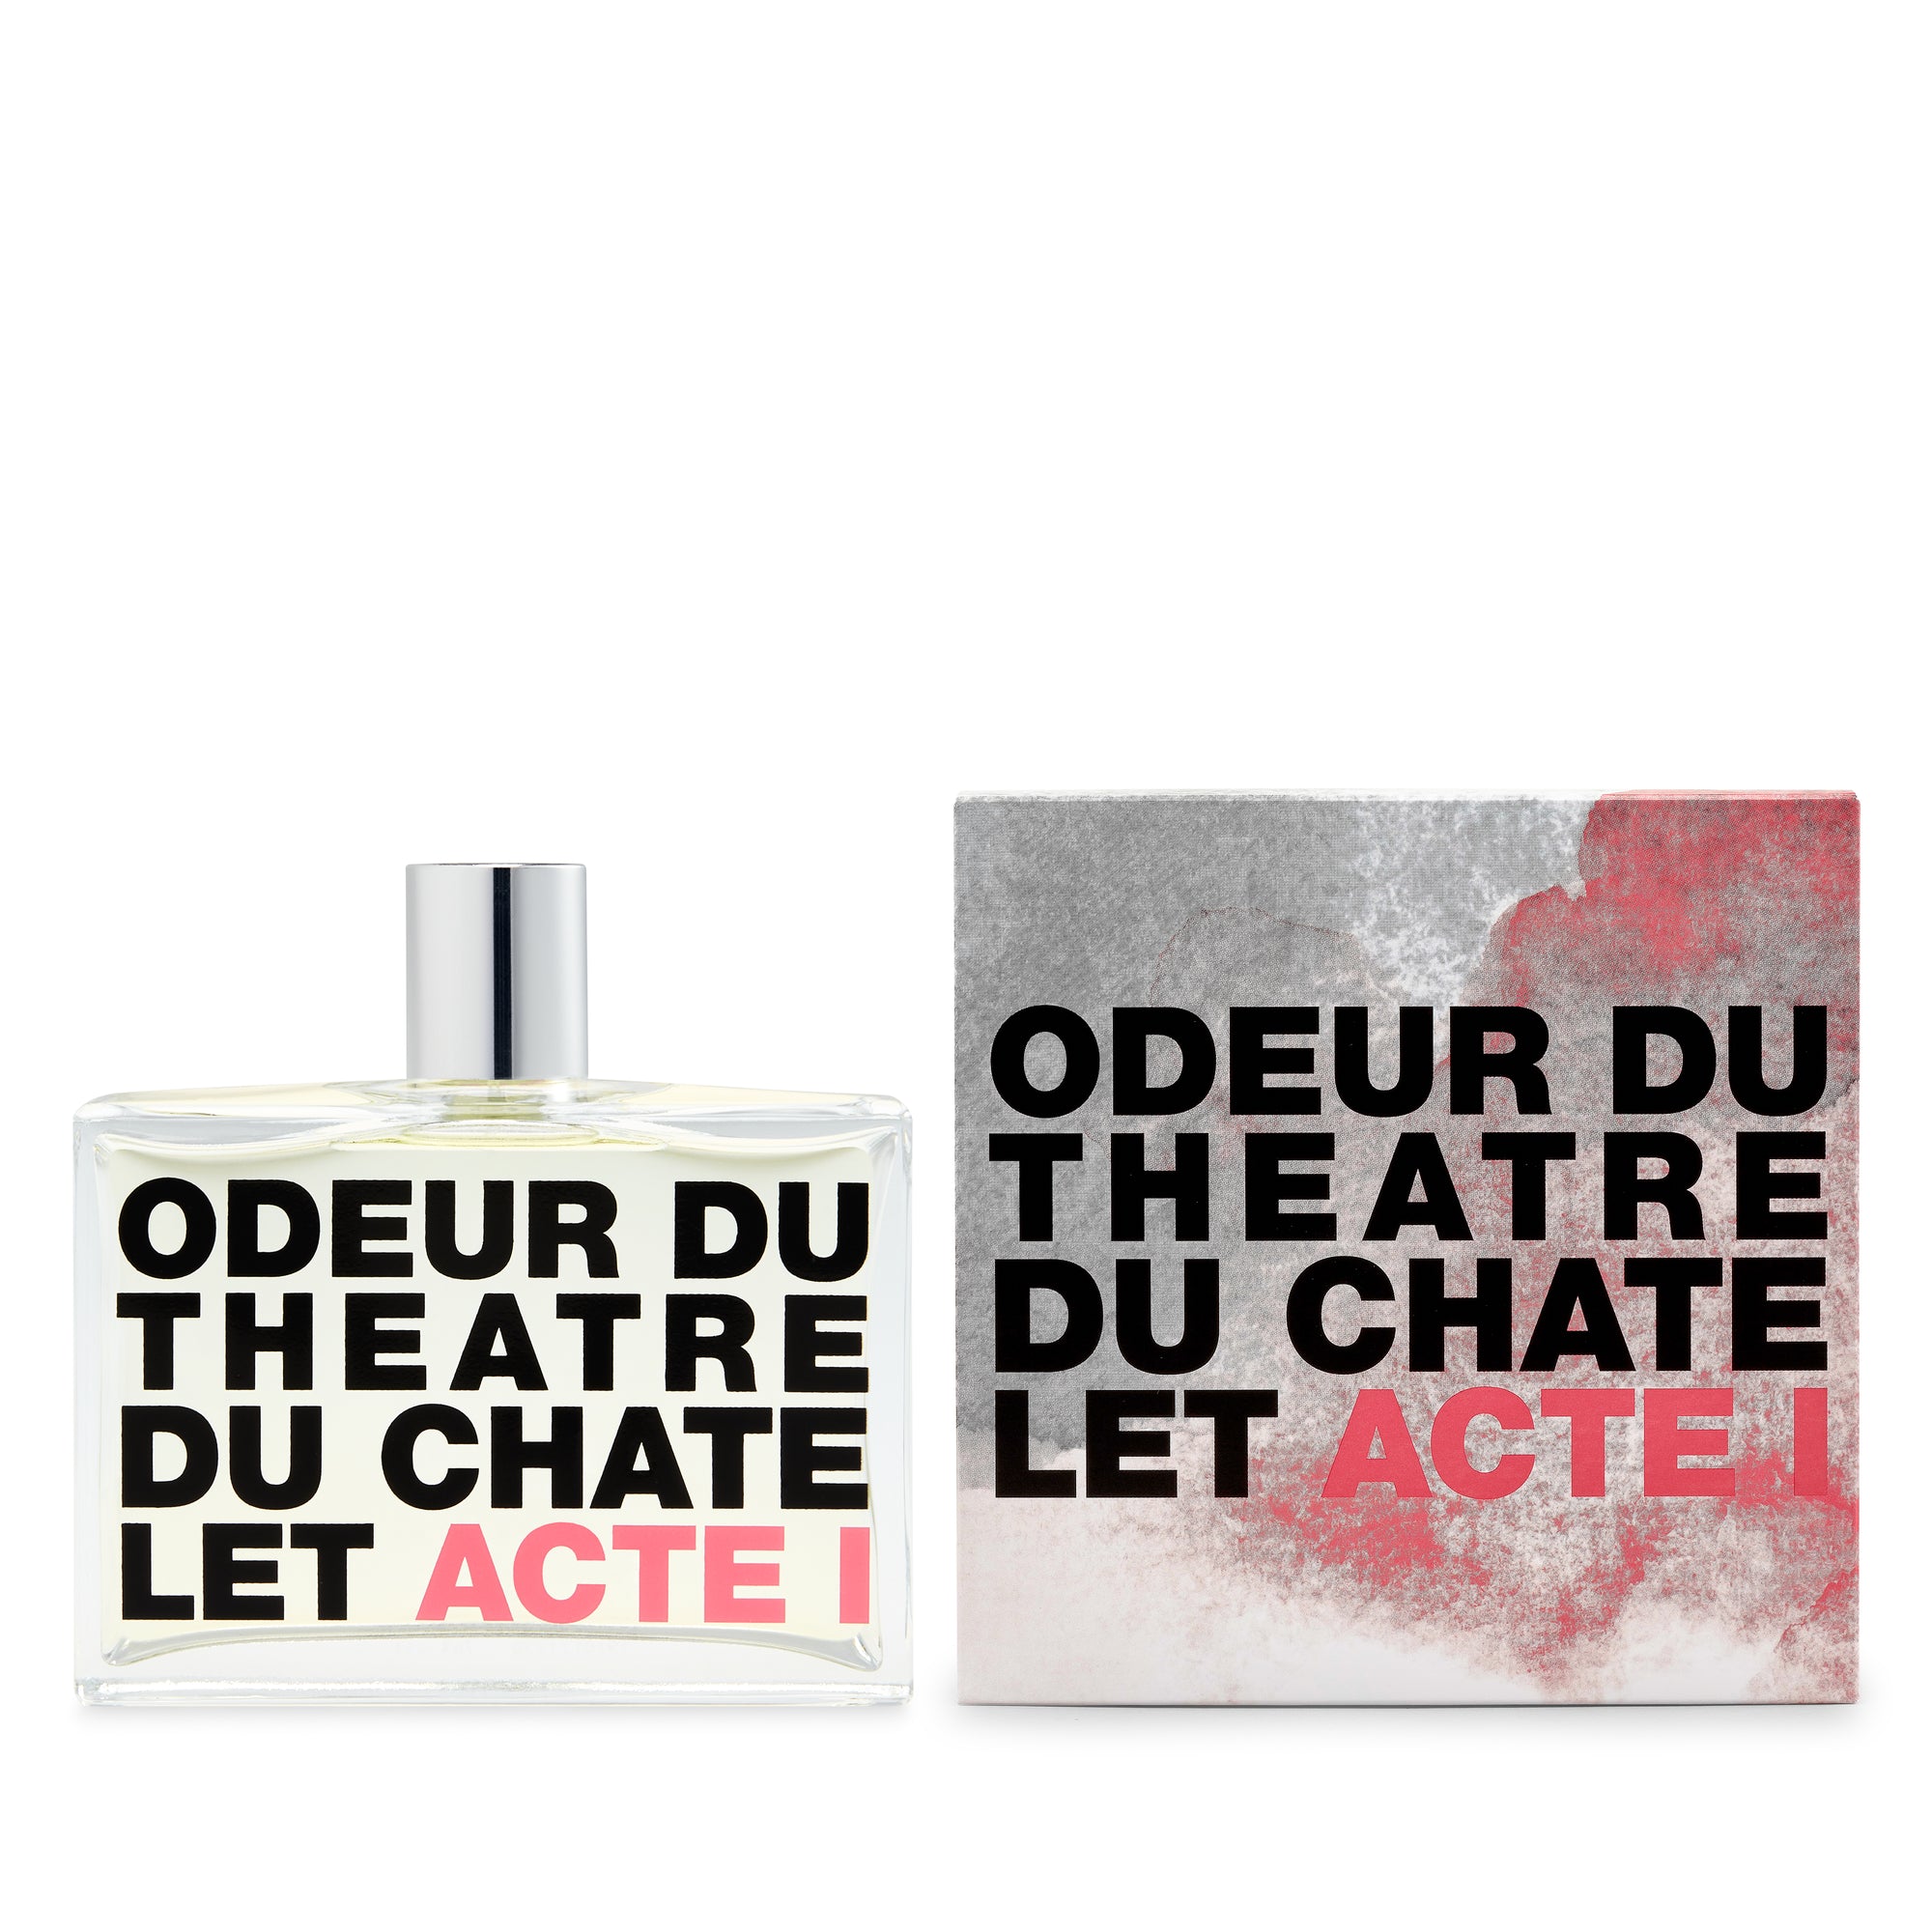 CDG Parfum - Odeur Du Theatre Du Chatelet - (200ml) view 2